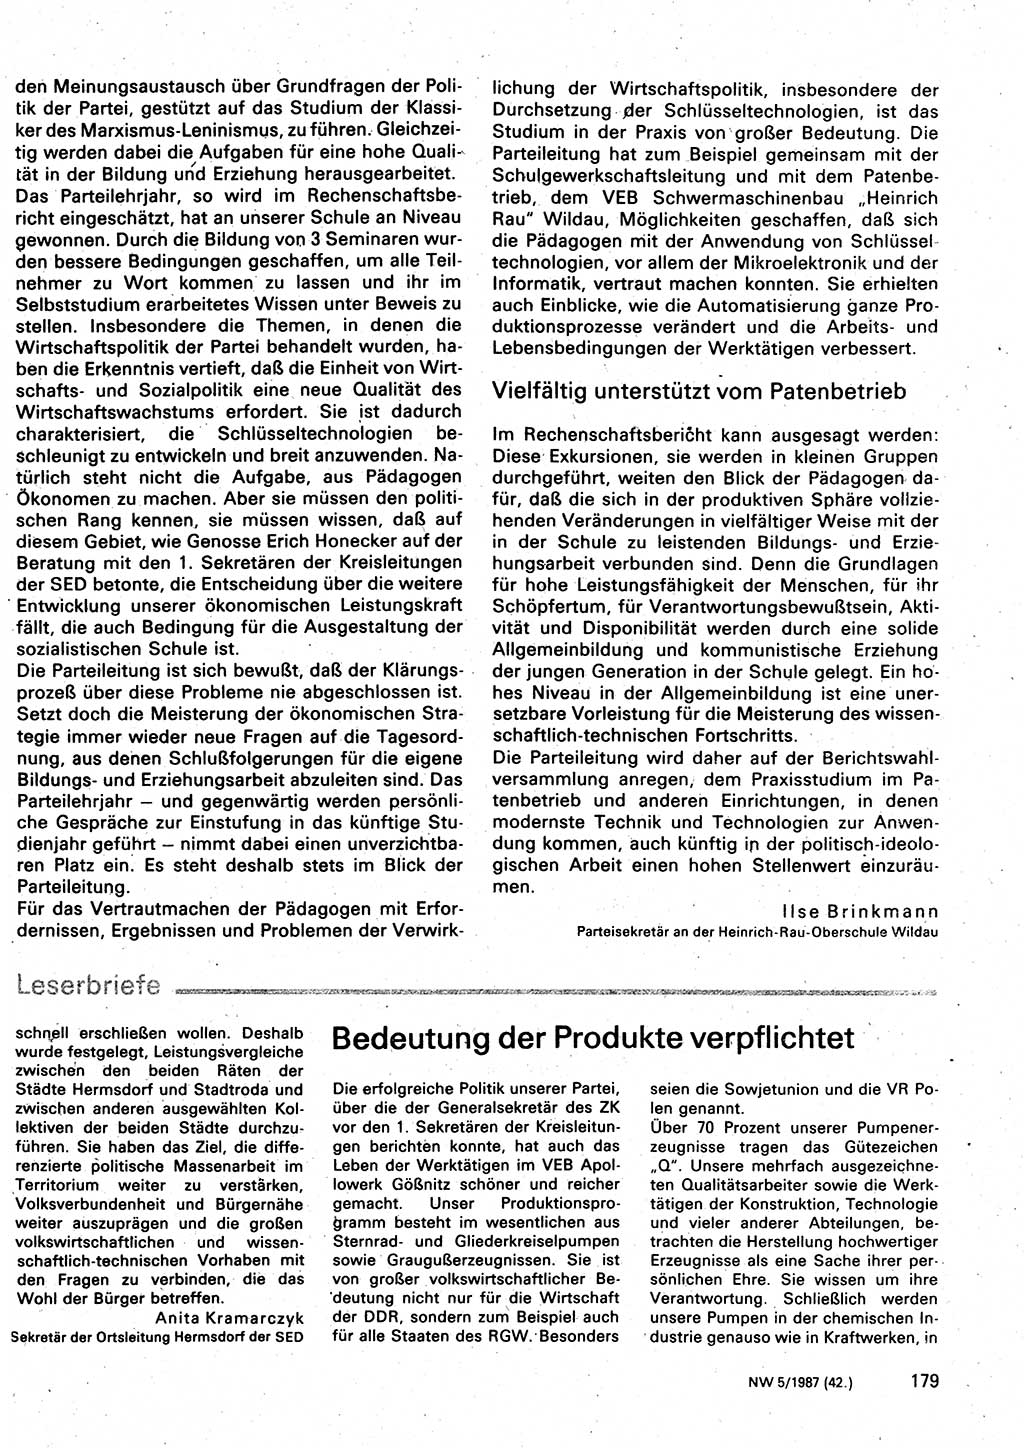 Neuer Weg (NW), Organ des Zentralkomitees (ZK) der SED (Sozialistische Einheitspartei Deutschlands) für Fragen des Parteilebens, 42. Jahrgang [Deutsche Demokratische Republik (DDR)] 1987, Seite 179 (NW ZK SED DDR 1987, S. 179)